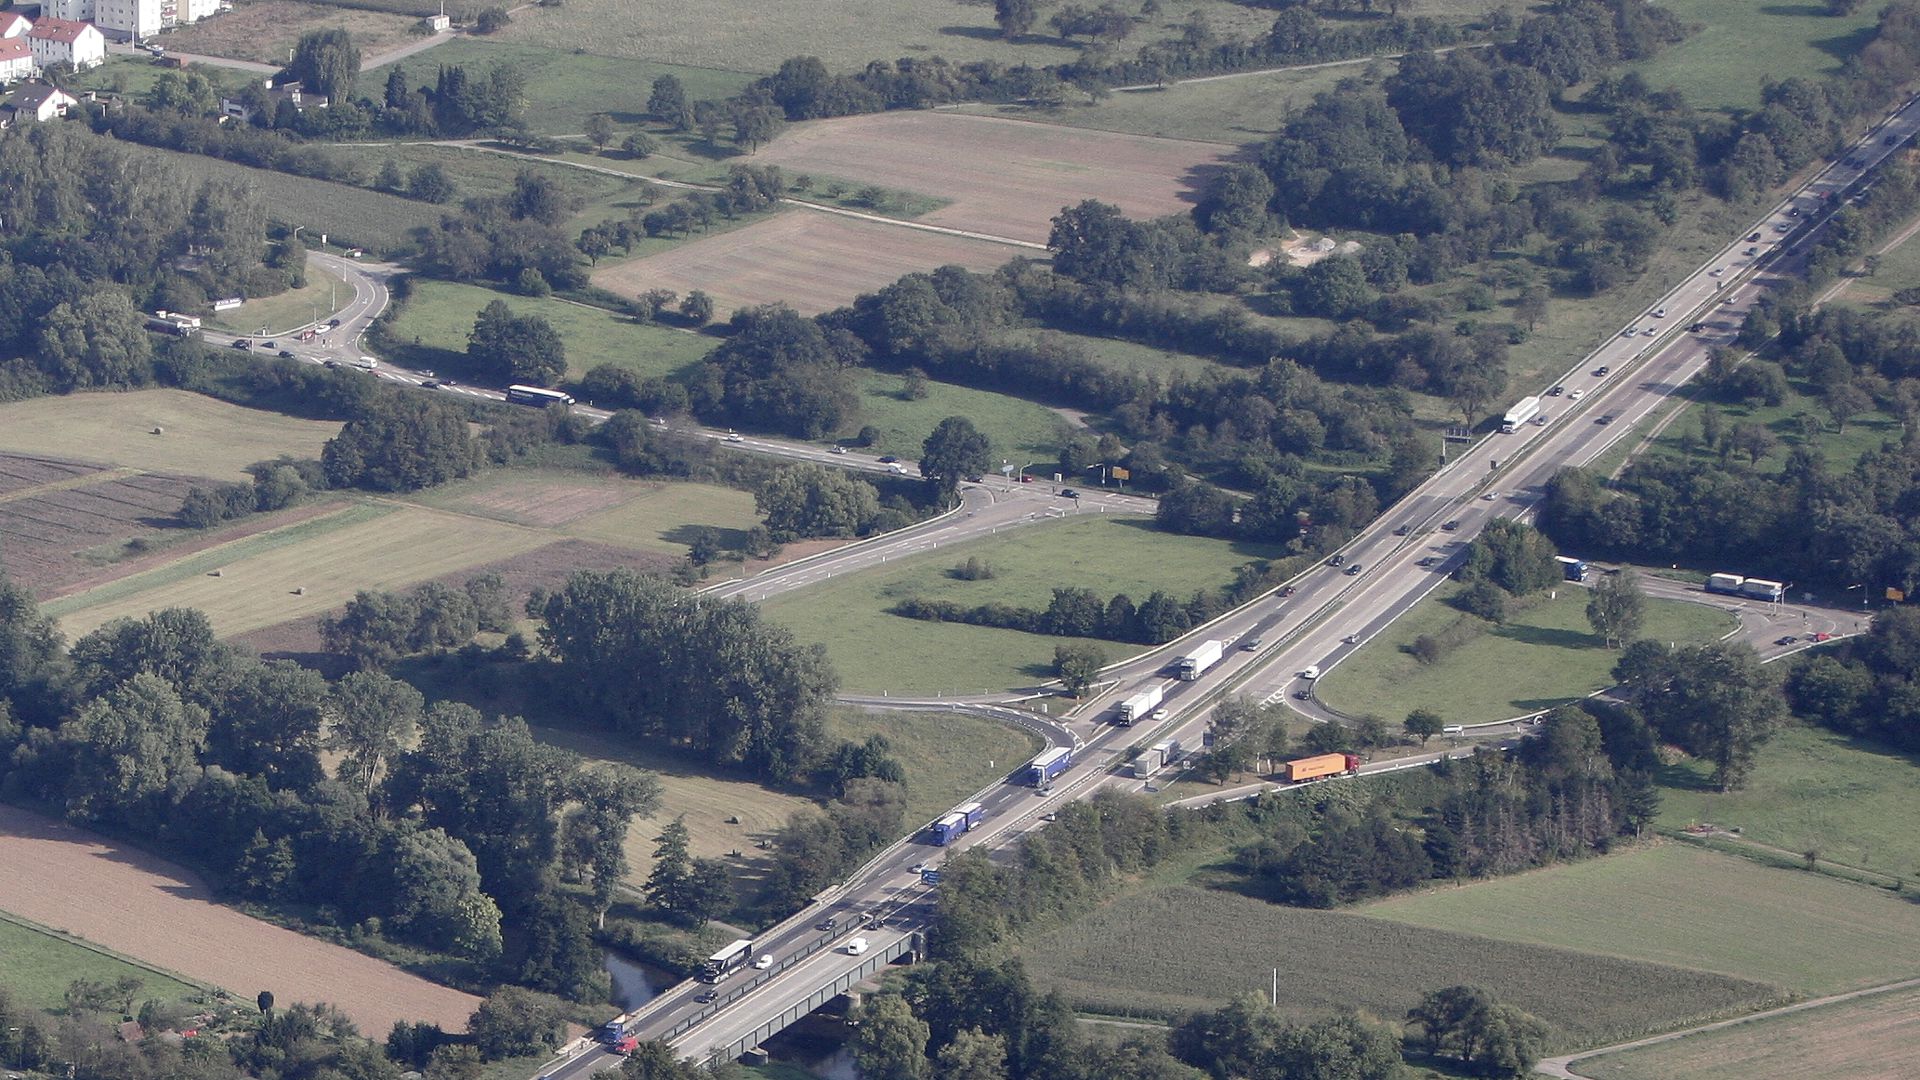 Geplantes Gewerbegebiet Reisersweg (im Bild links oben neben der Autobahn).